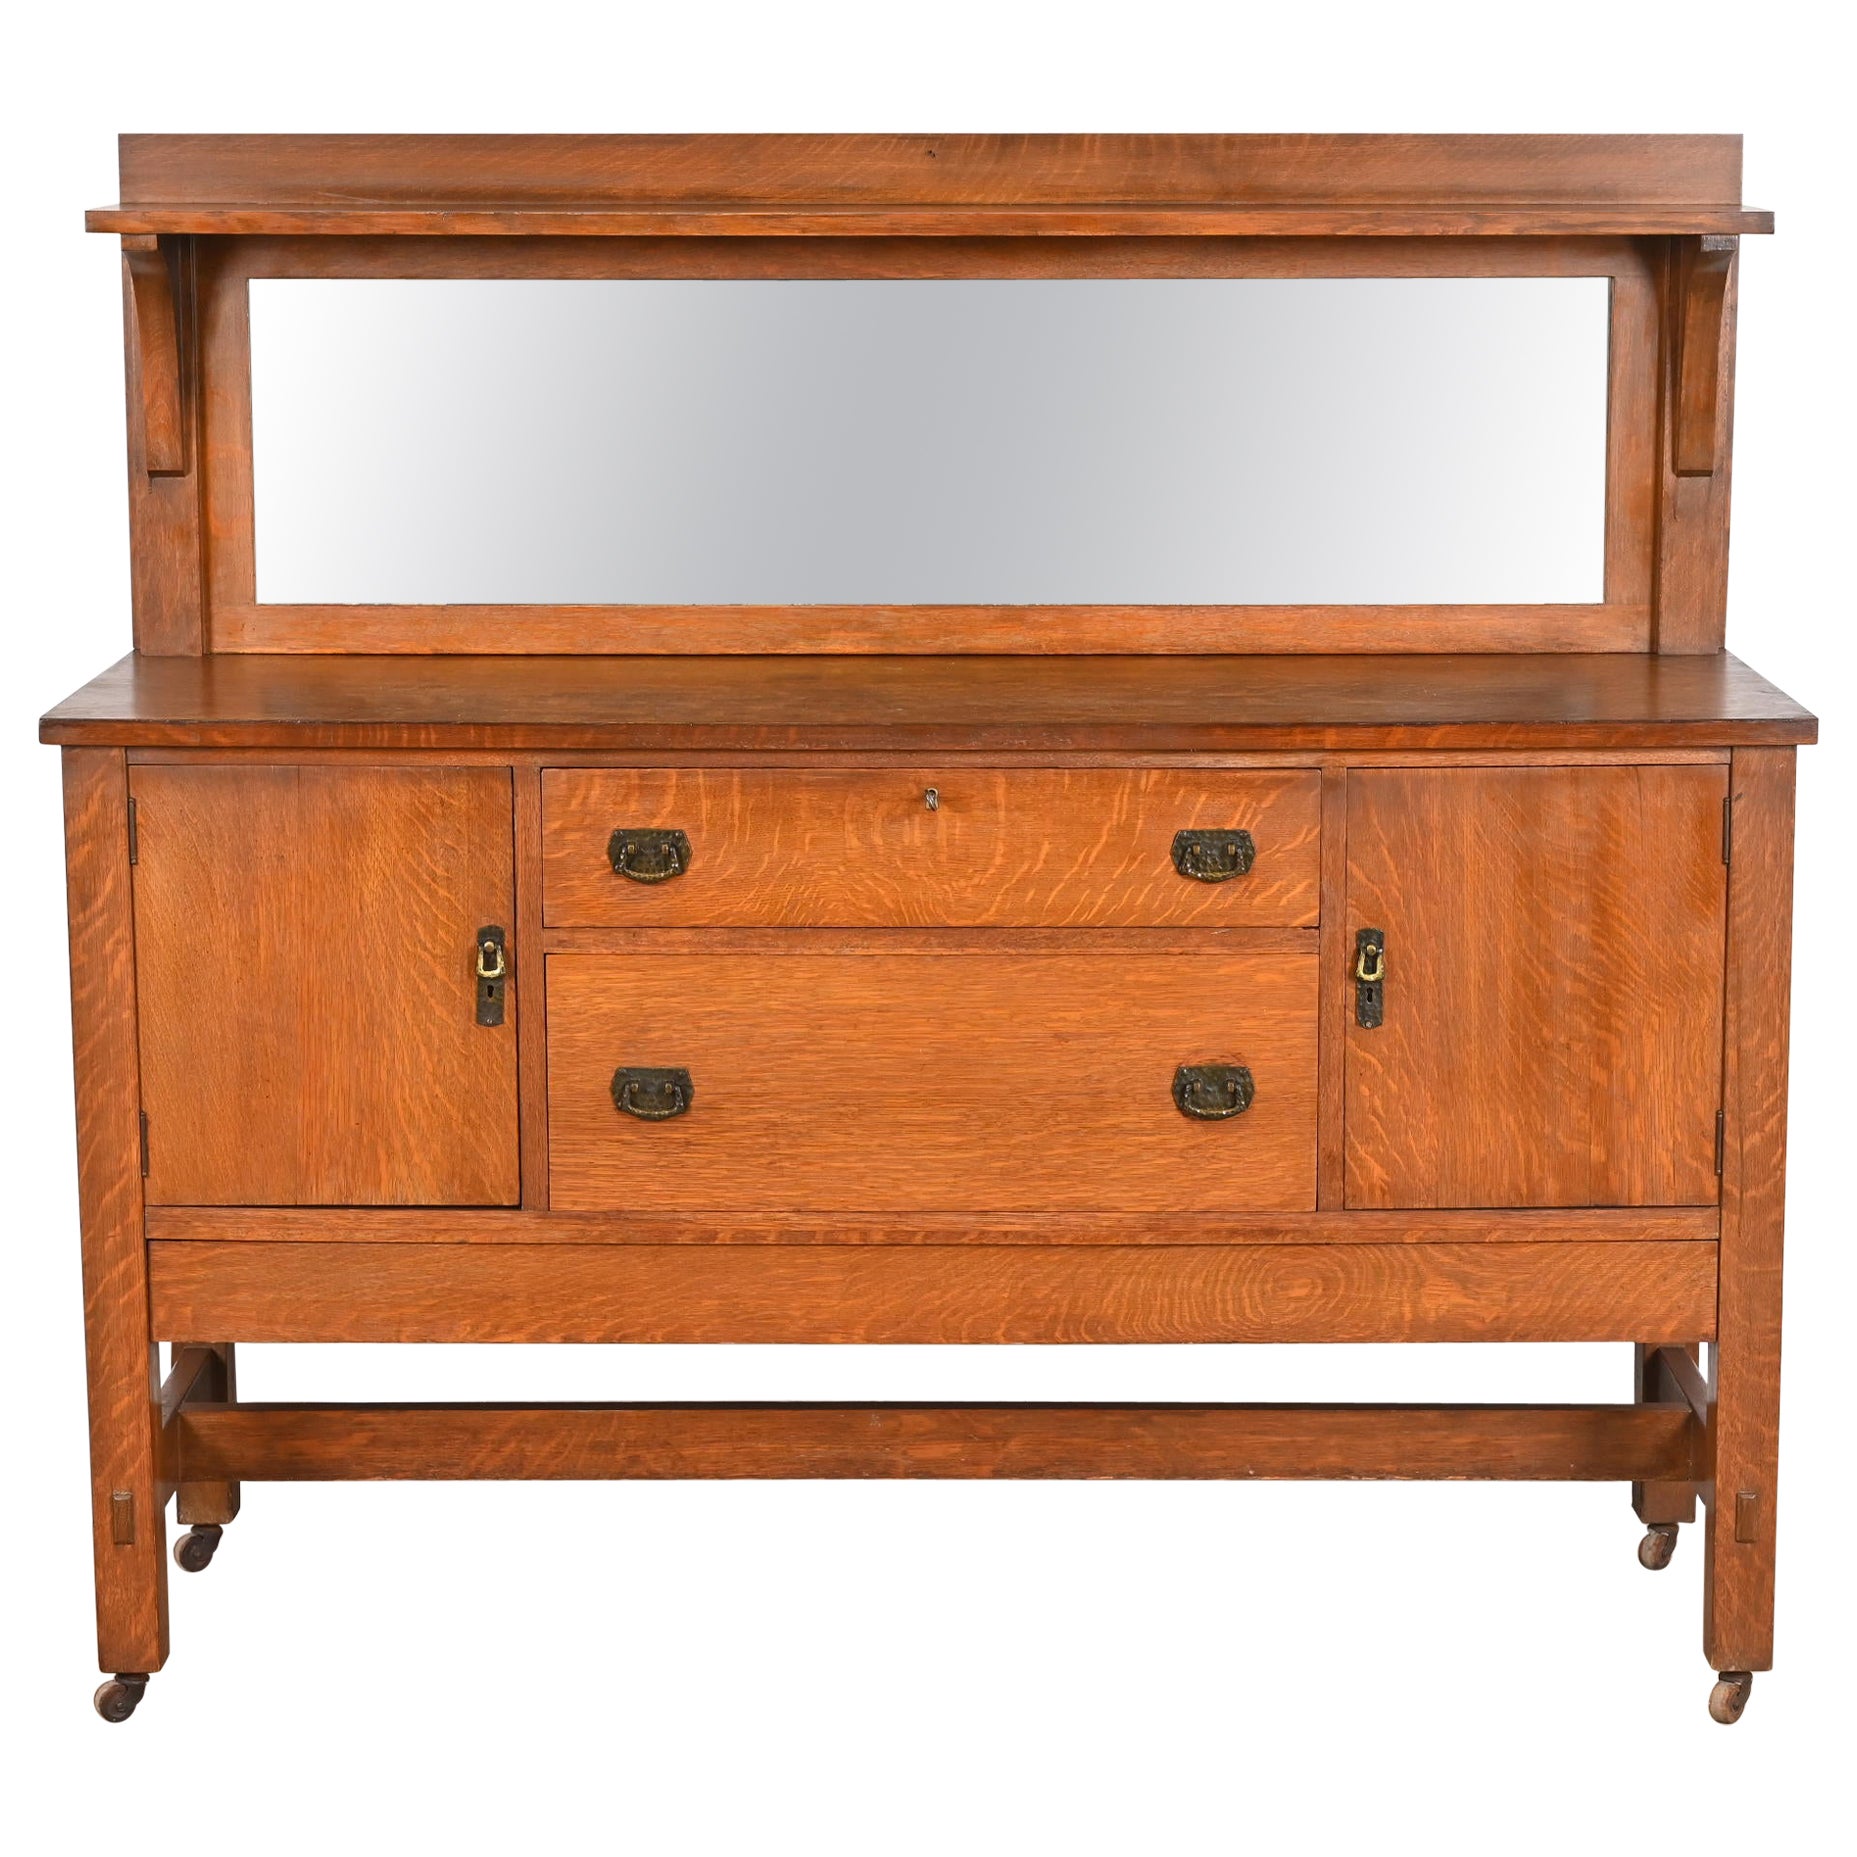 Lifetime Furniture Antique Mission Oak Arts & Crafts Sideboard or Bar Cabinet